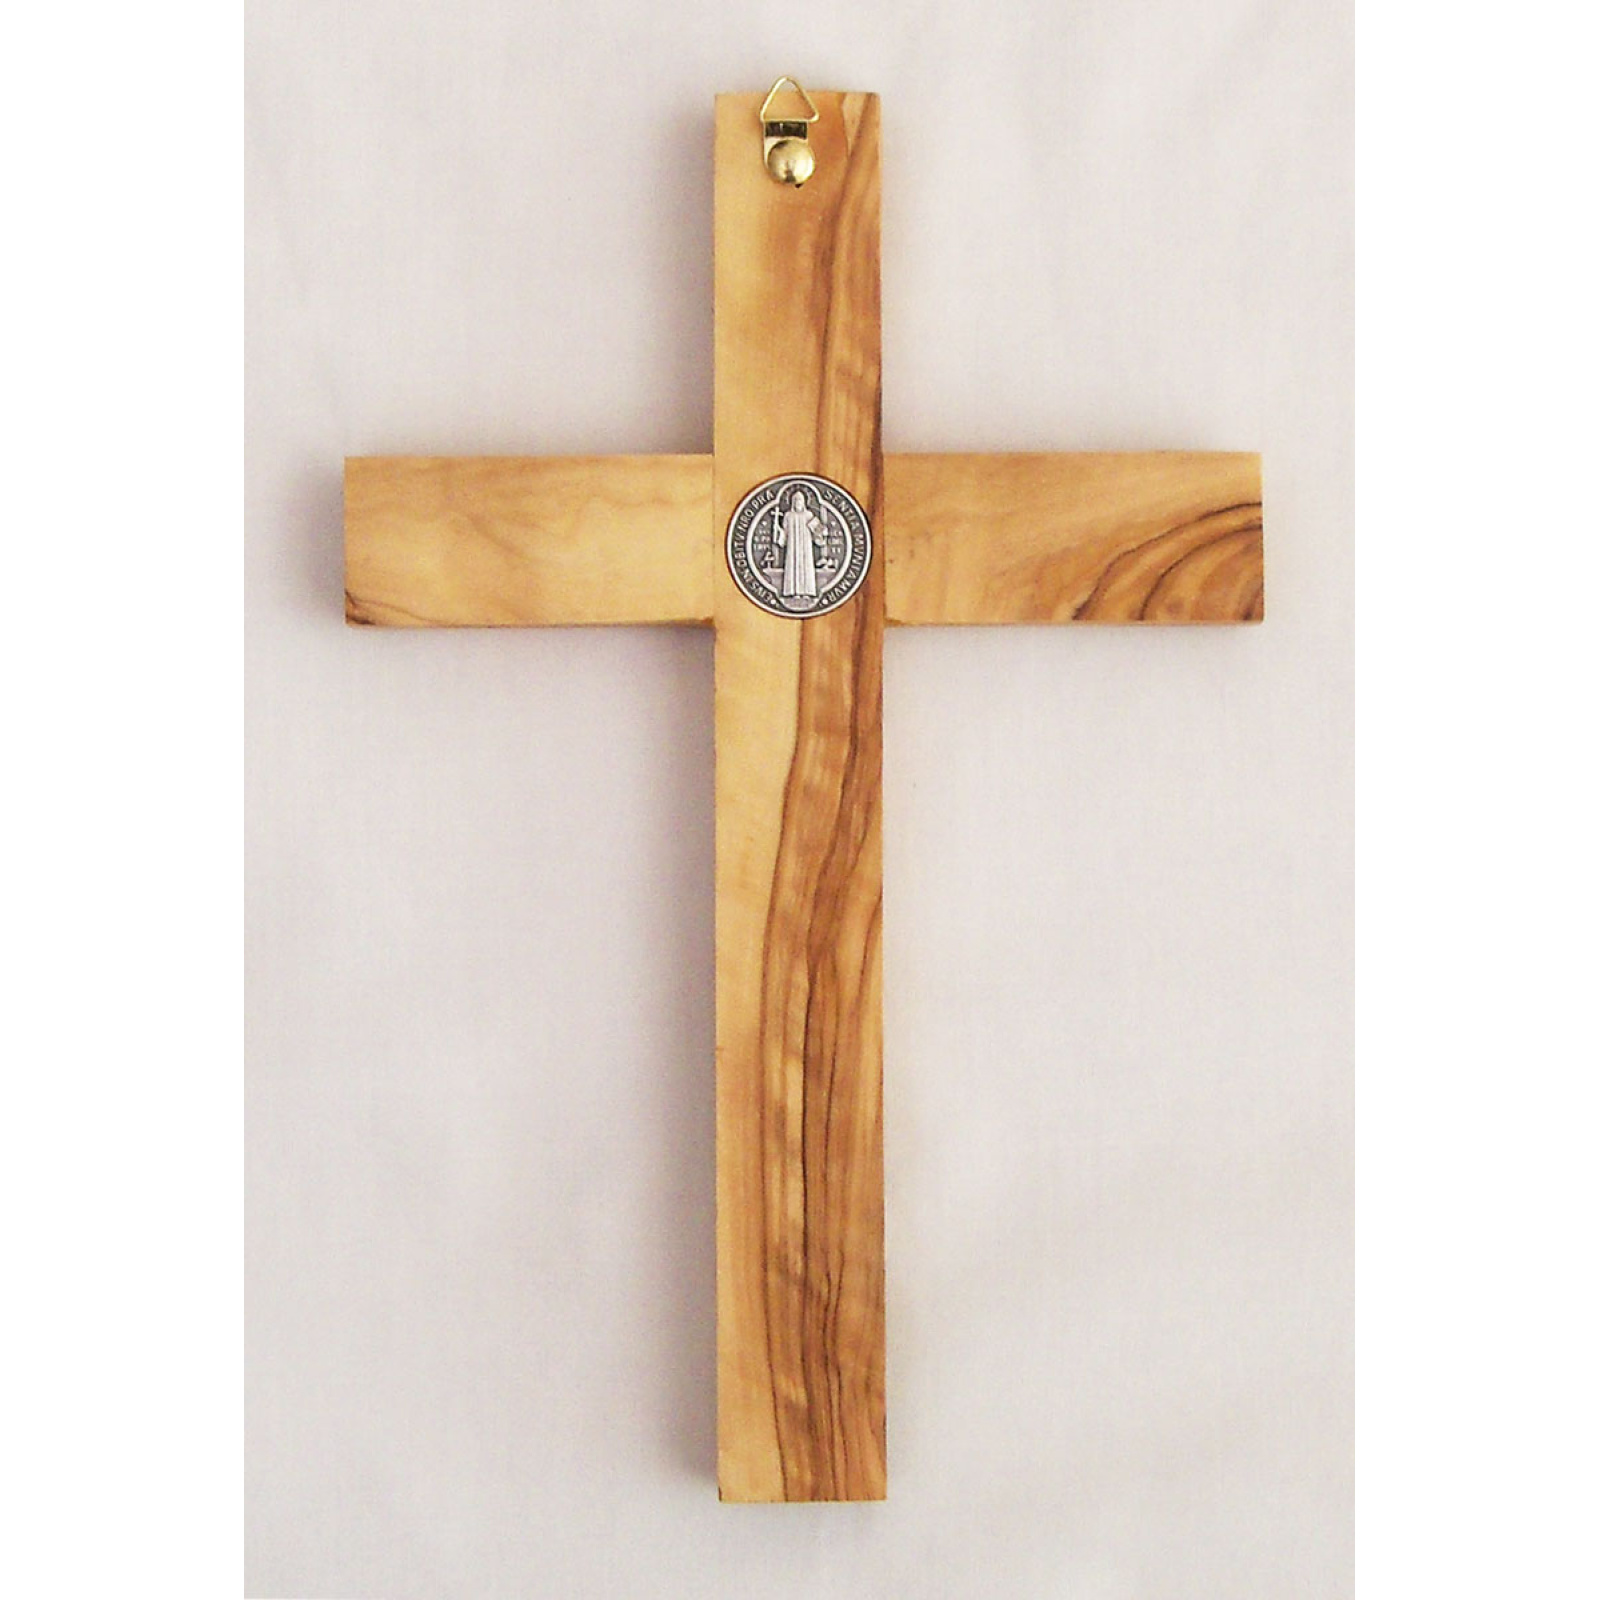 Saint Benedict crucifix